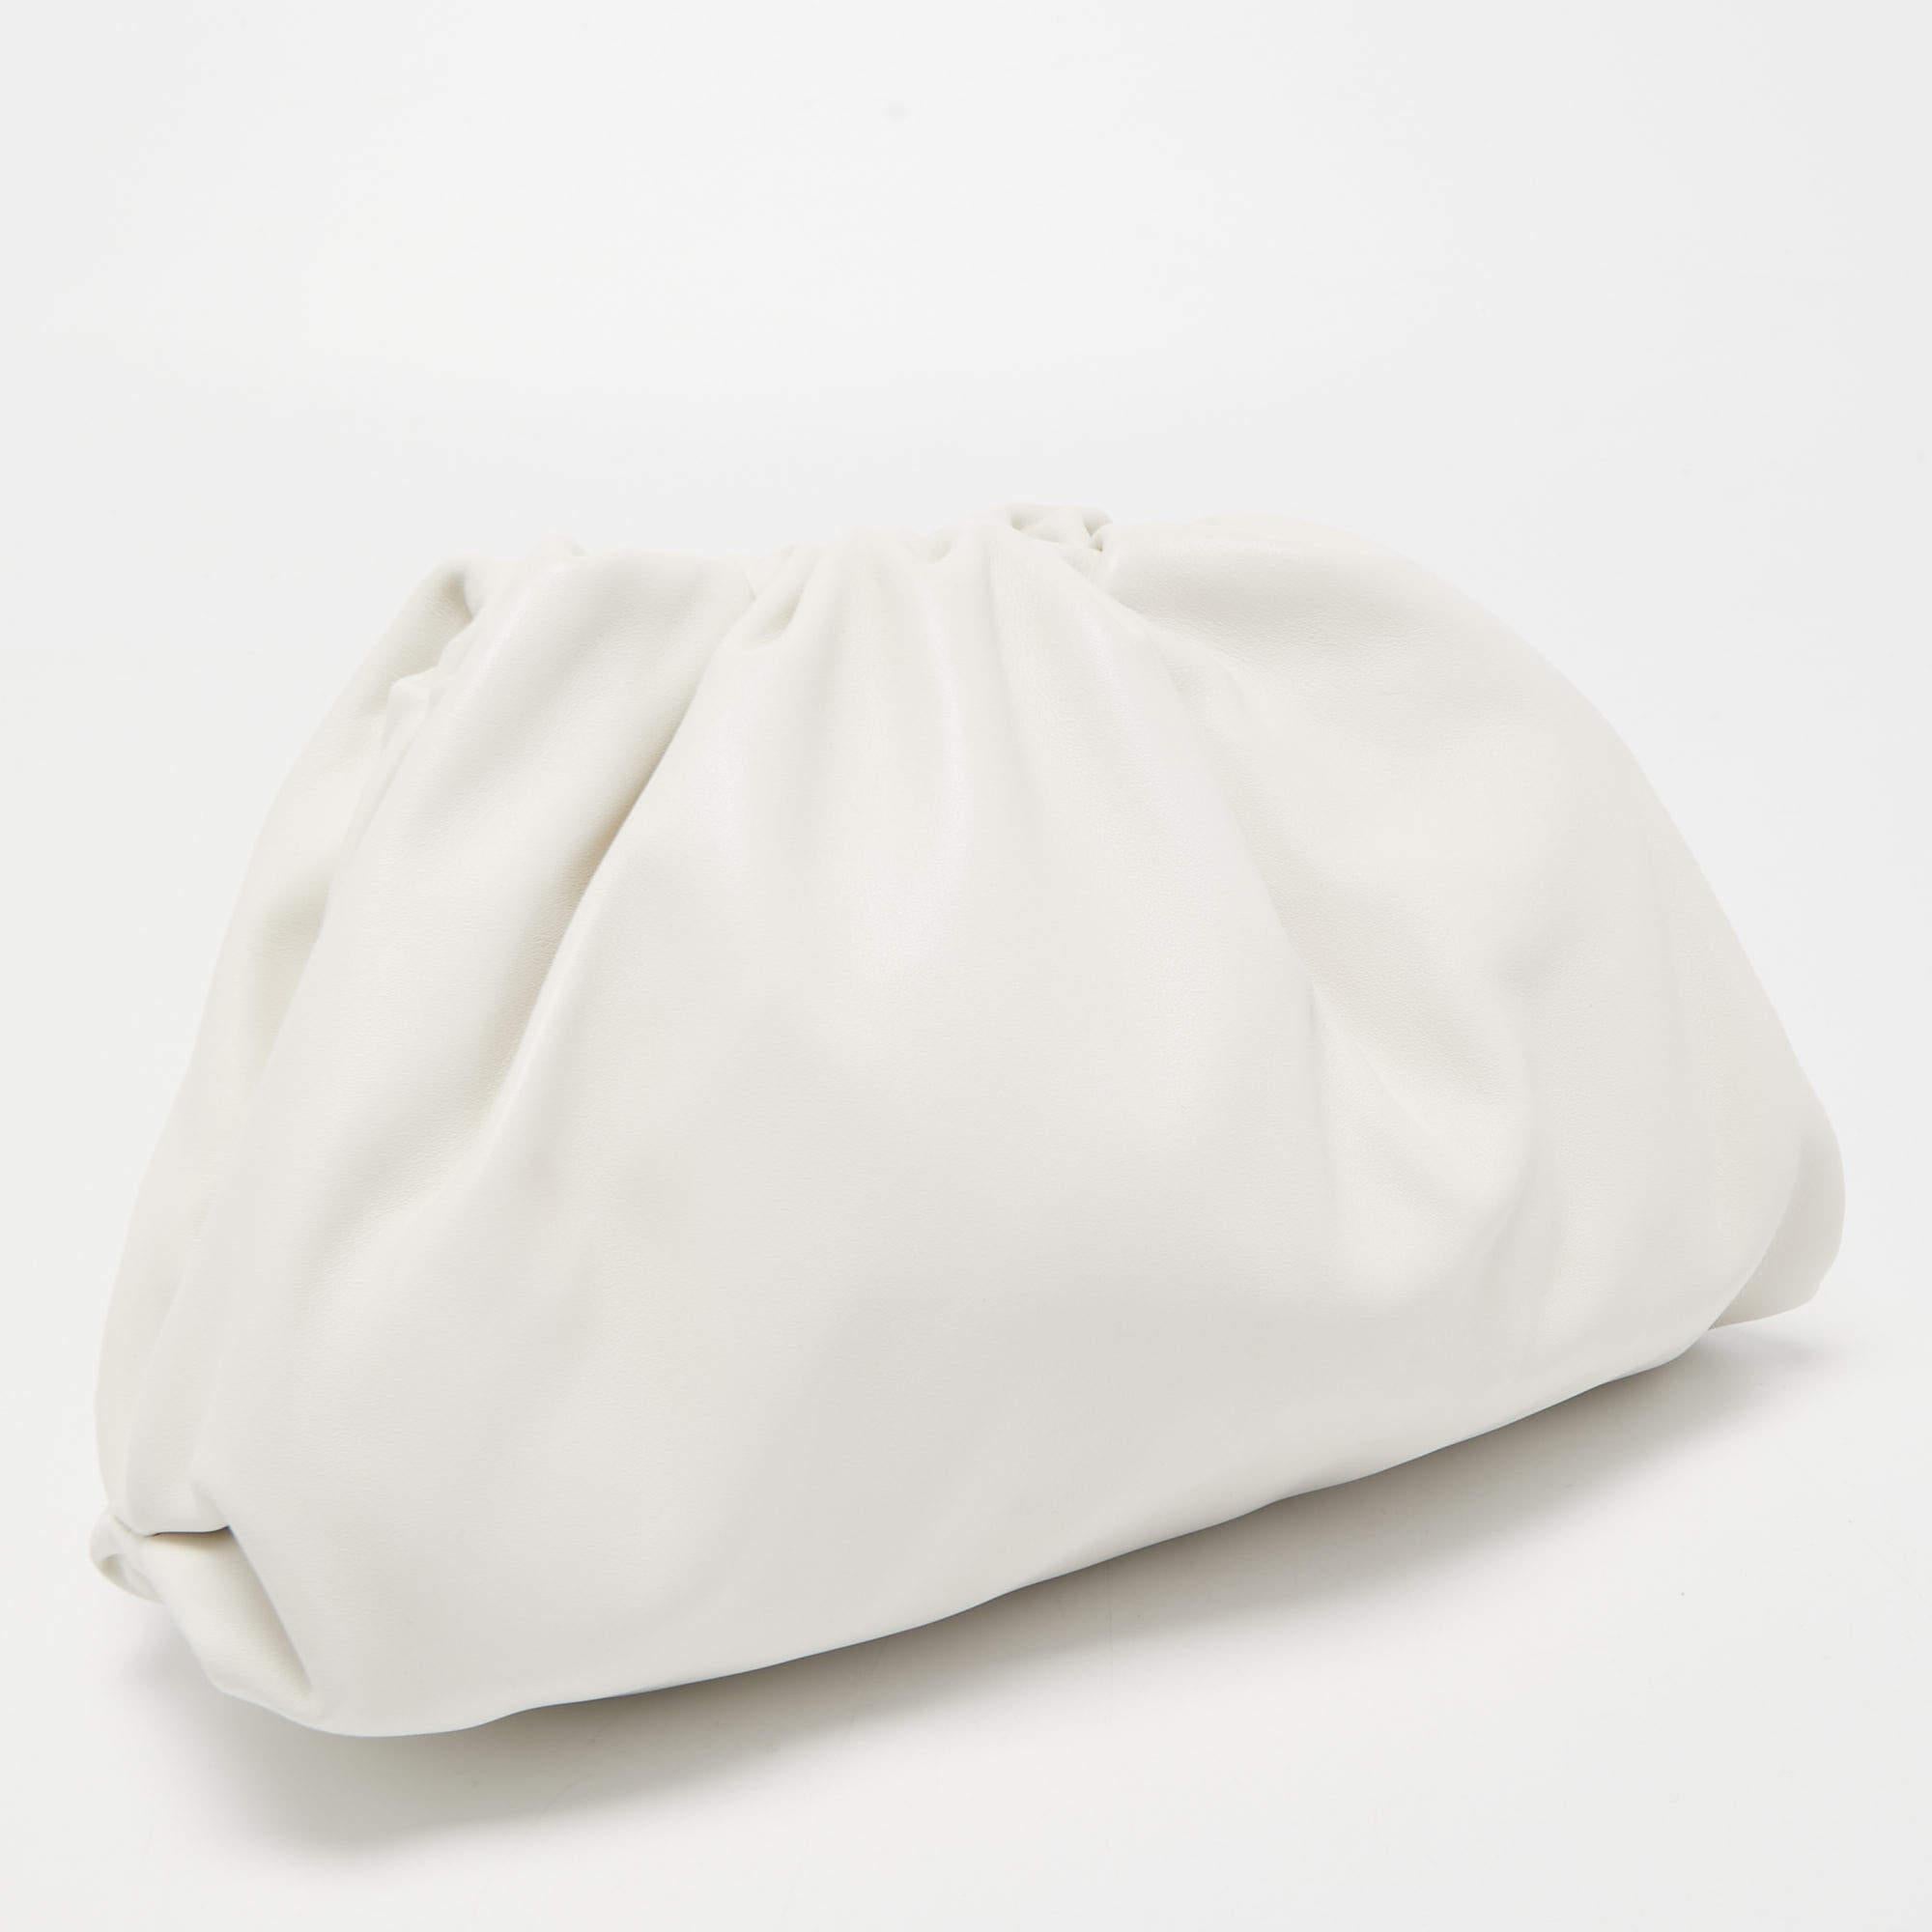 Bottega Veneta White Leather Teen Pouch Clutch In New Condition For Sale In Dubai, Al Qouz 2